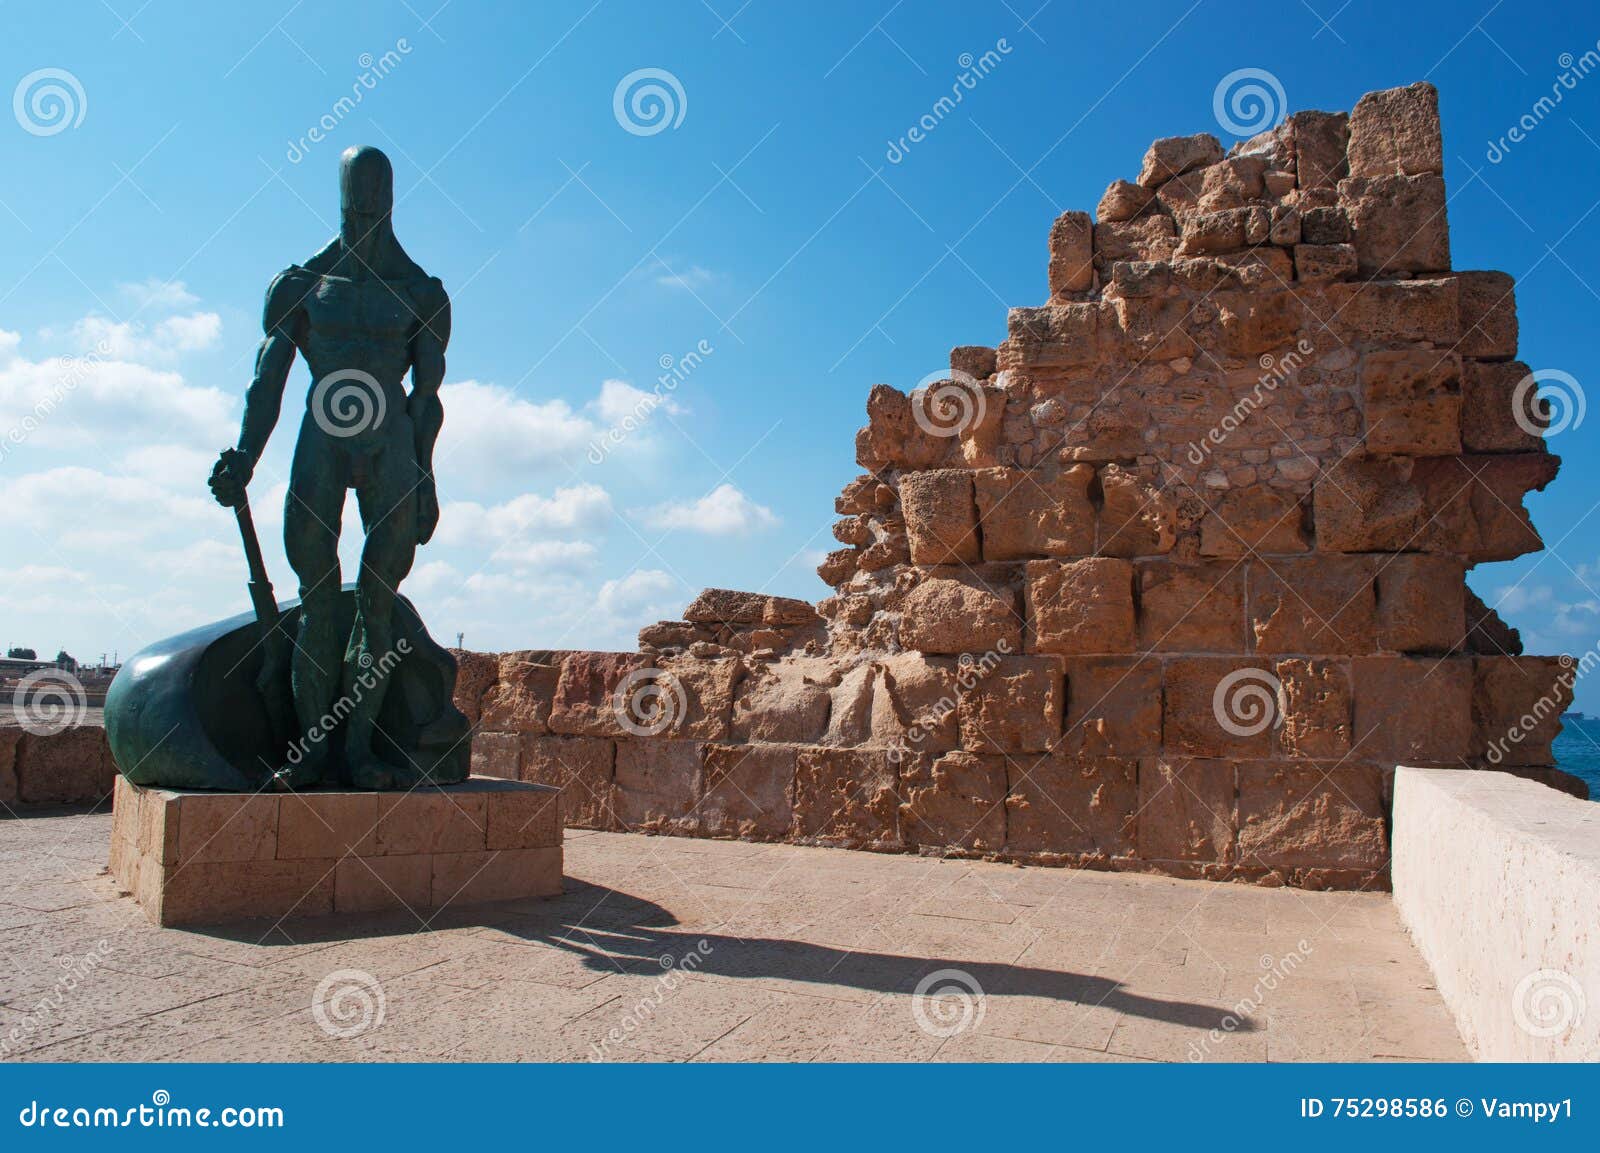 Caesarea, Israel - April 1, 2018: Bronze Sculpture Of A 